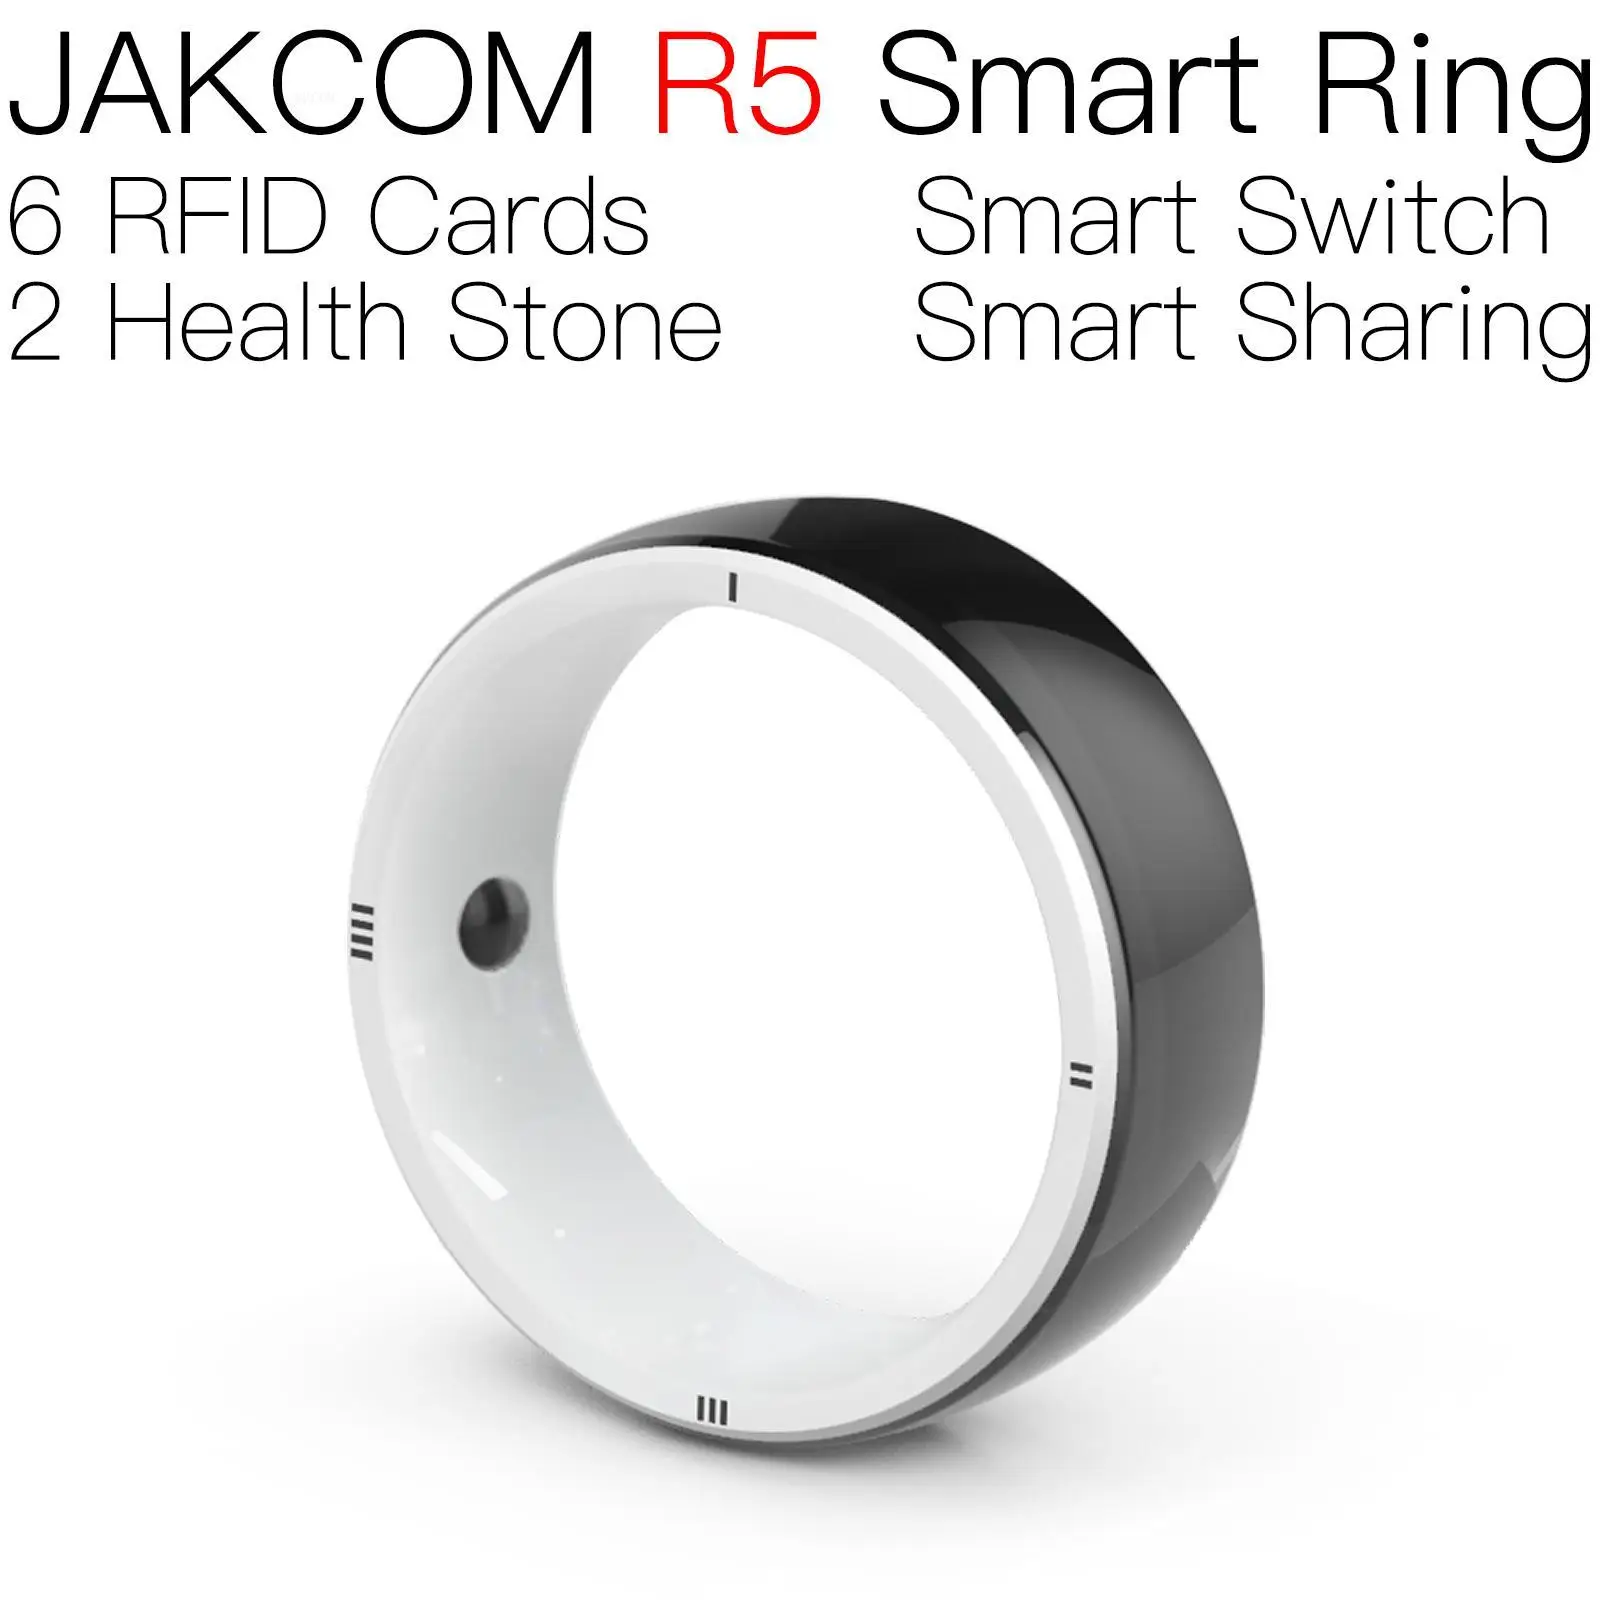 

Умное кольцо JAKCOM R5 лучше, чем ветеринарная антенна для инжектора, идентификационные чипы, оригинальная бирка amibo, rfid, считыватель домашних ж...